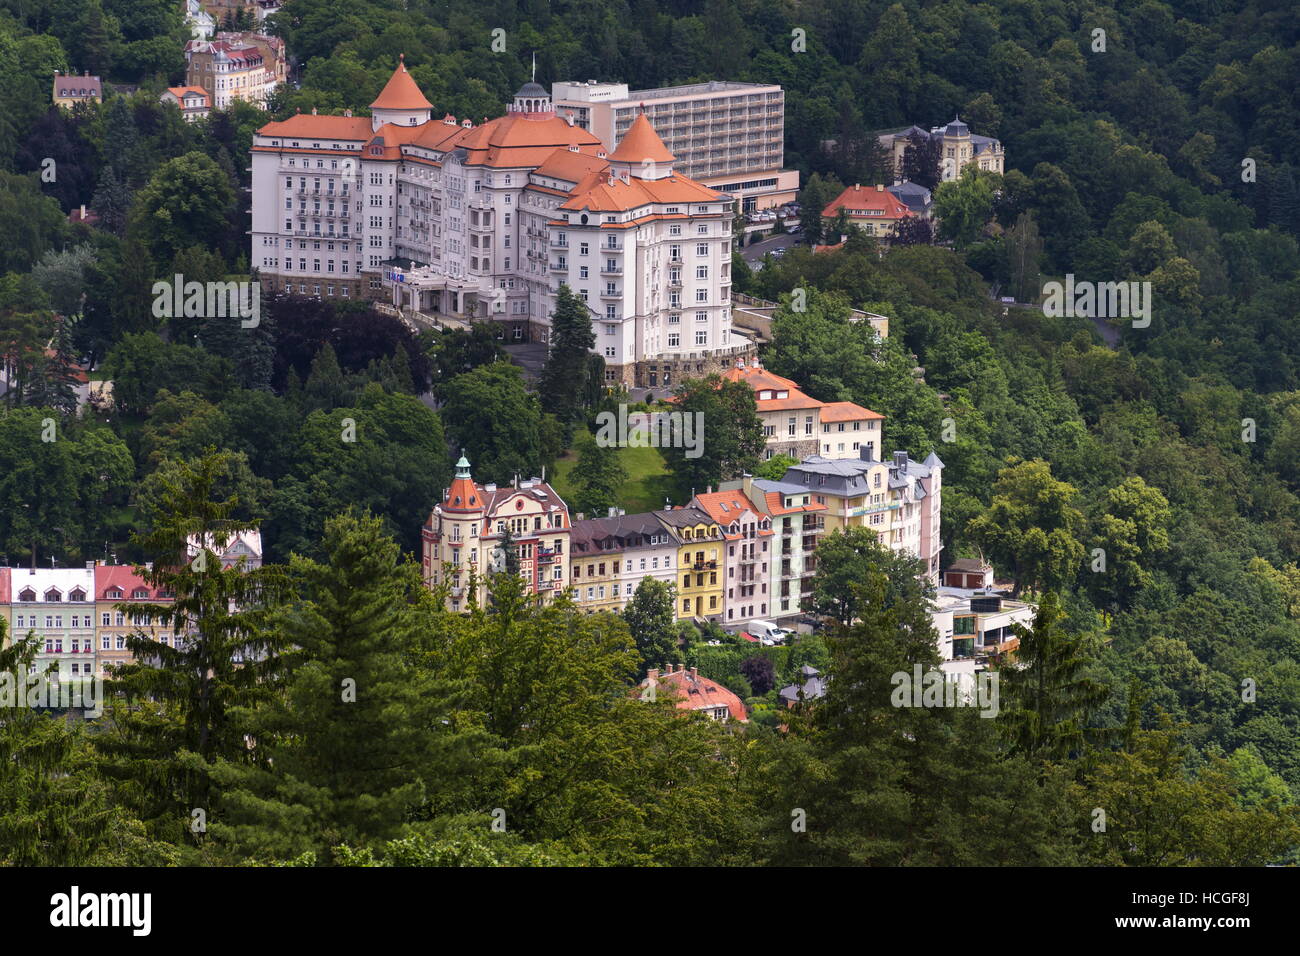 Luftaufnahme der Kurstadt Karlovy Vary in der Tschechischen Republik Stockfoto